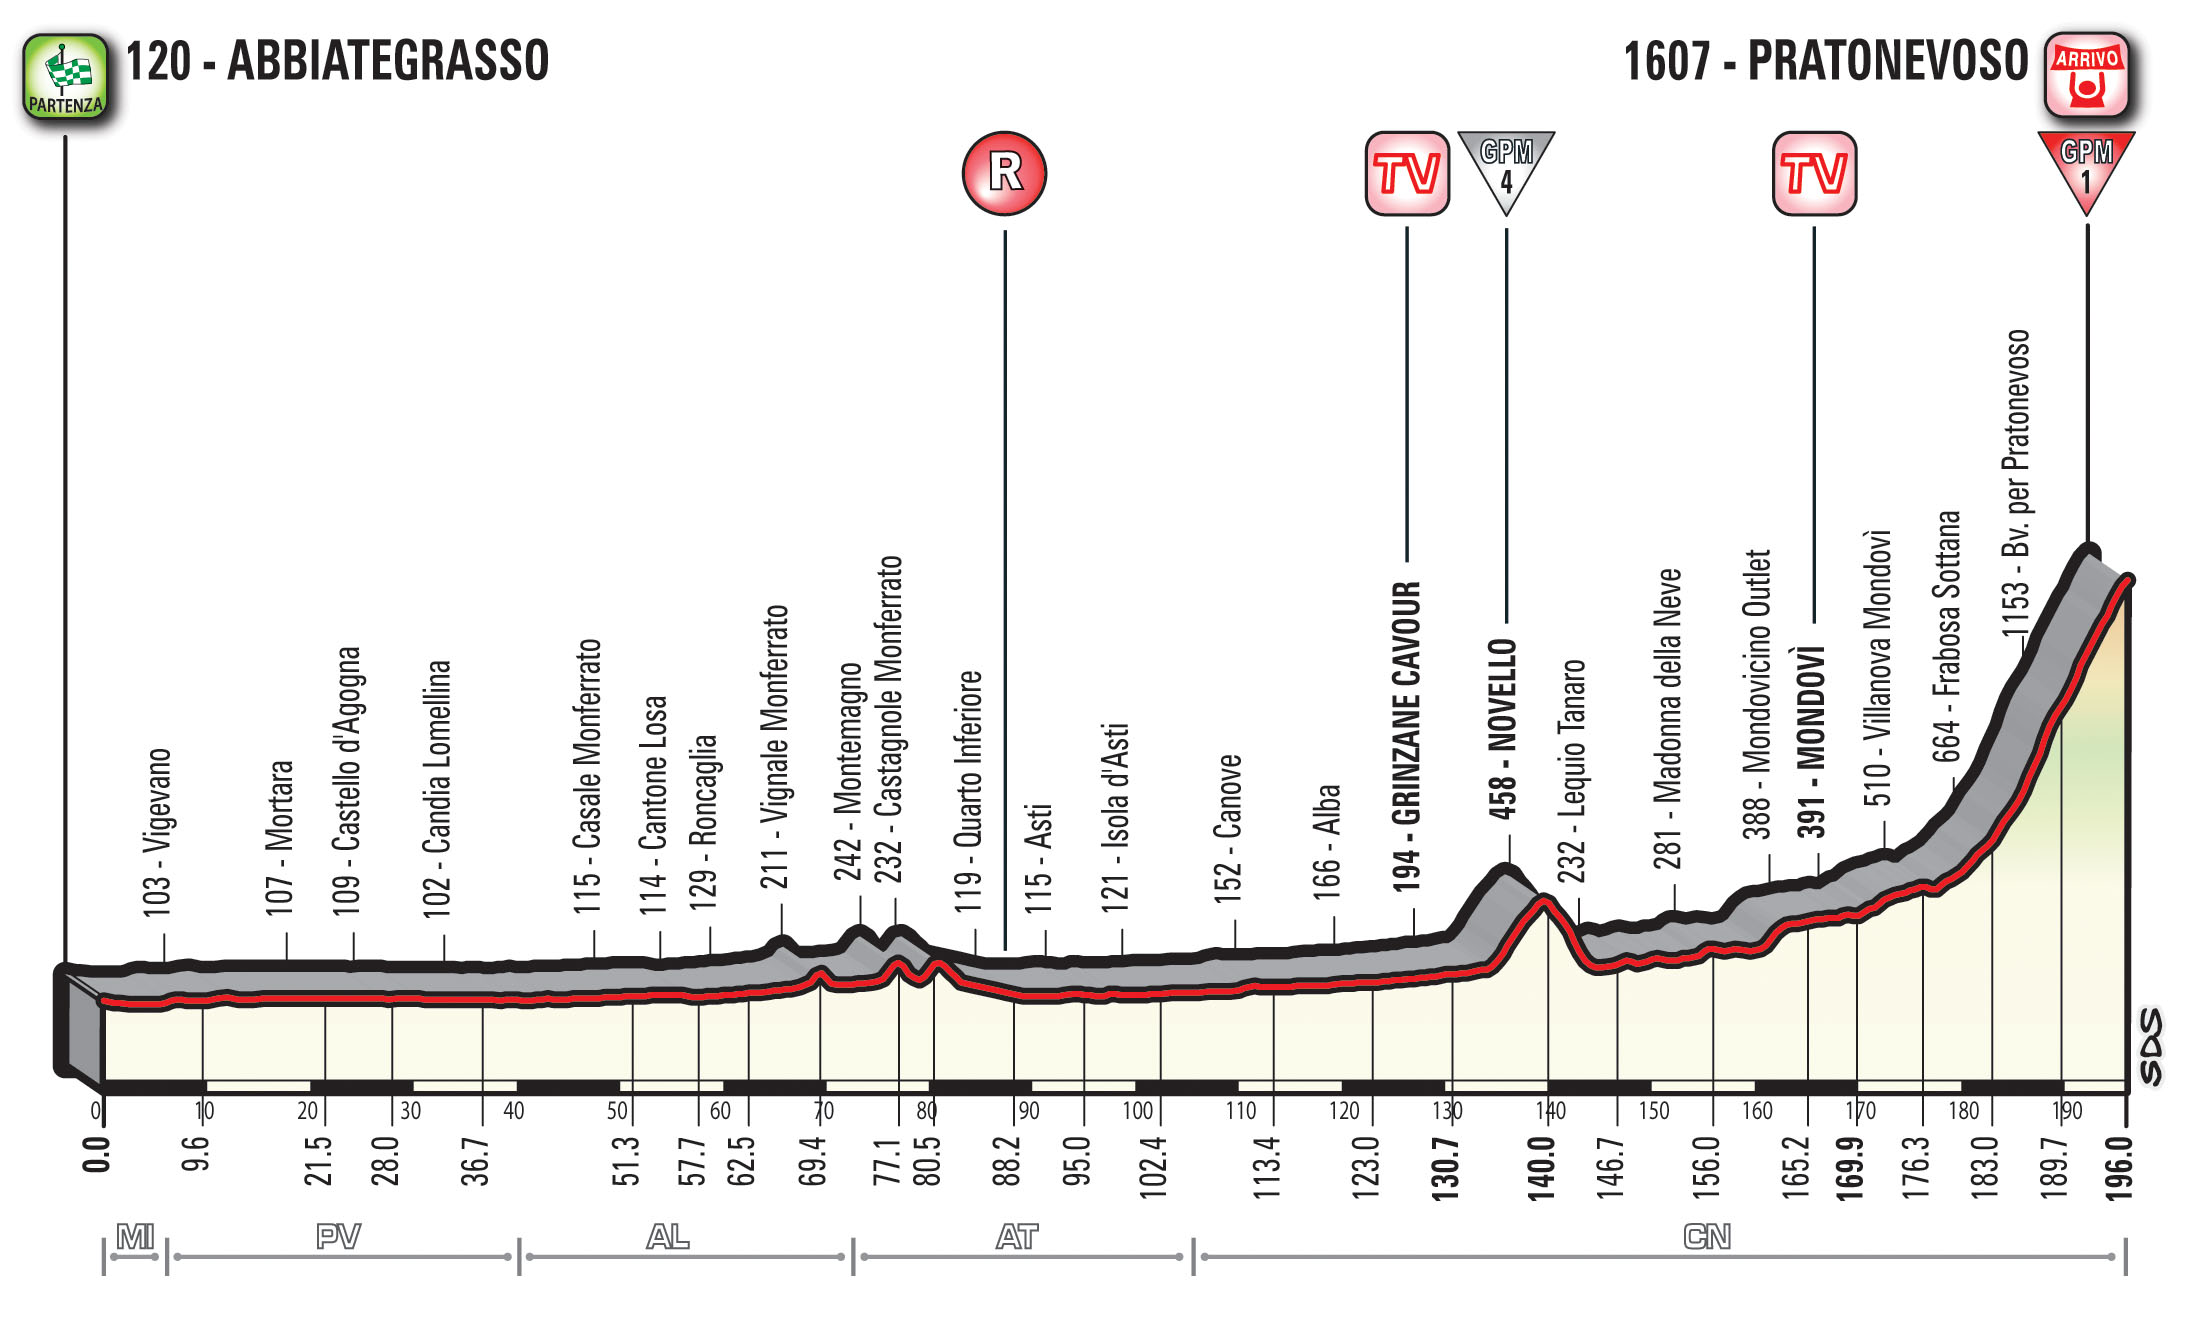 profil 18. etapu Giro d'Italia 2018